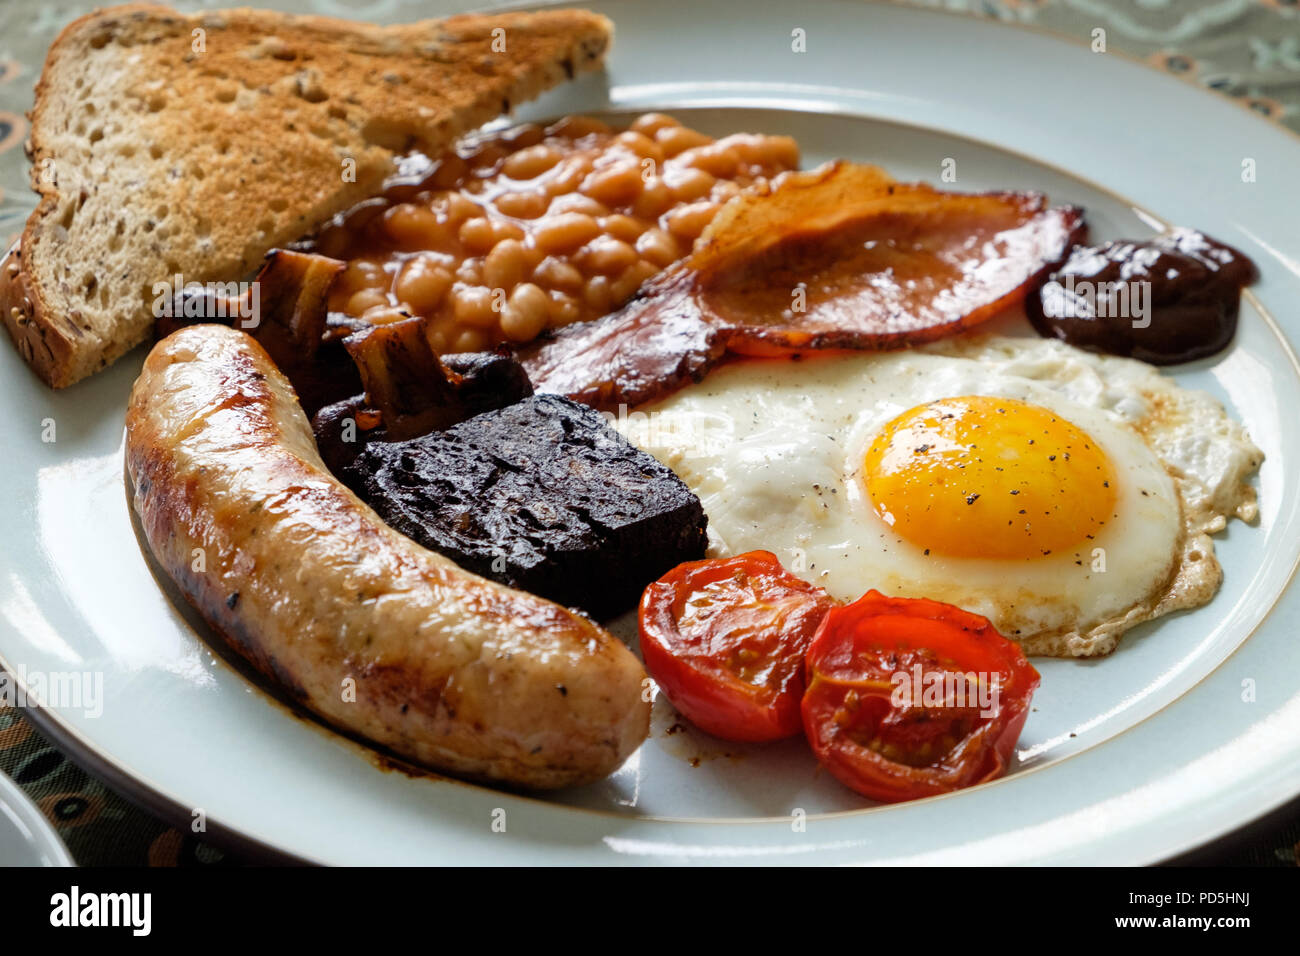 Un petit-déjeuner anglais complet avec œufs, bacon, saucisses de Cumberland, du boudin noir, des fèves, tomates, champignons, pain grillé et une tasse de thé. Banque D'Images